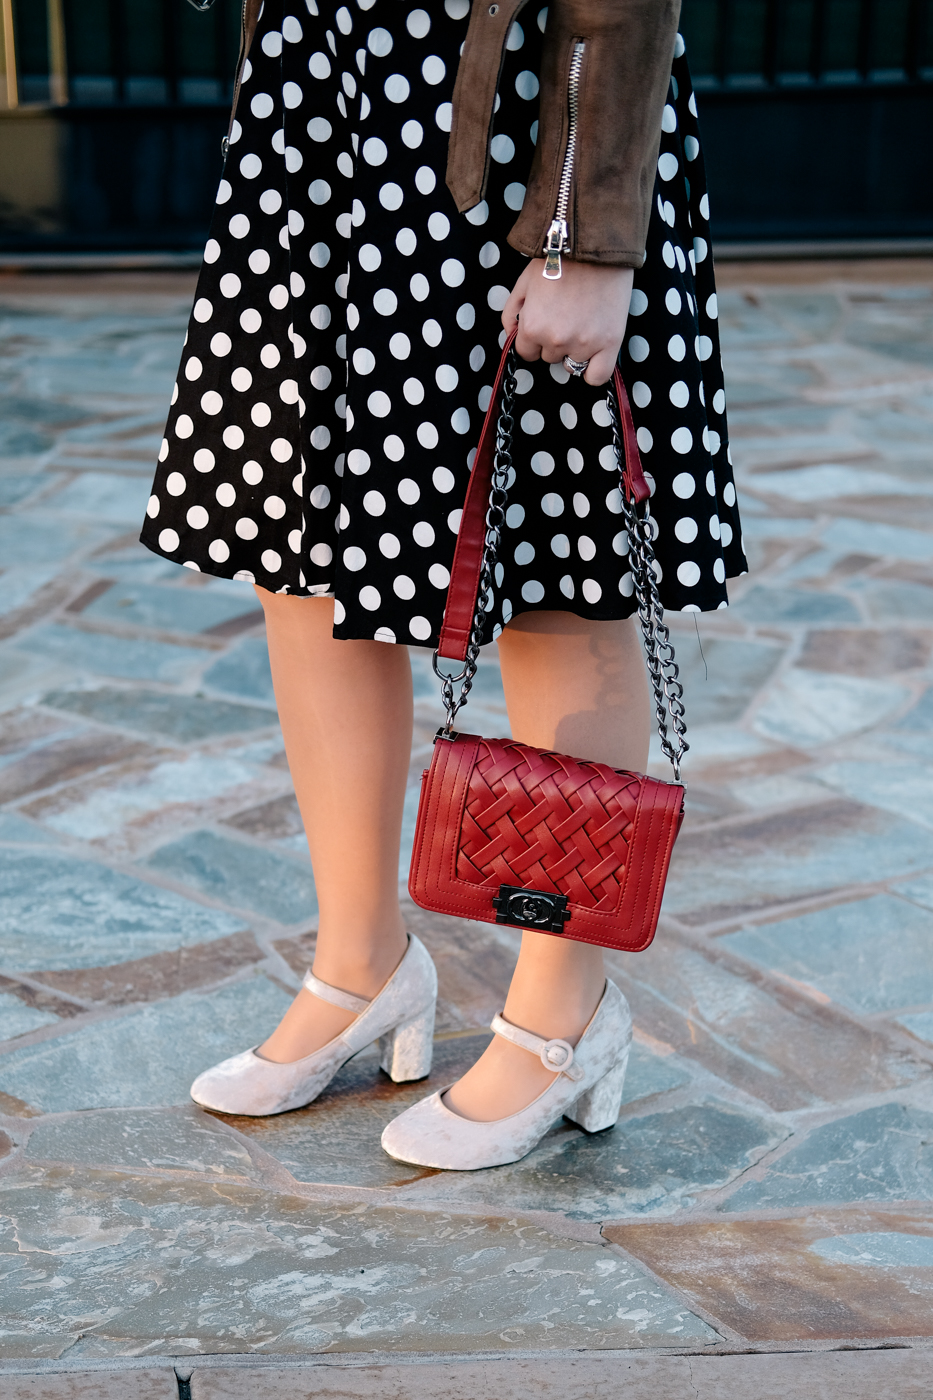 Debora Dahl velvet shoes and polka dot dress